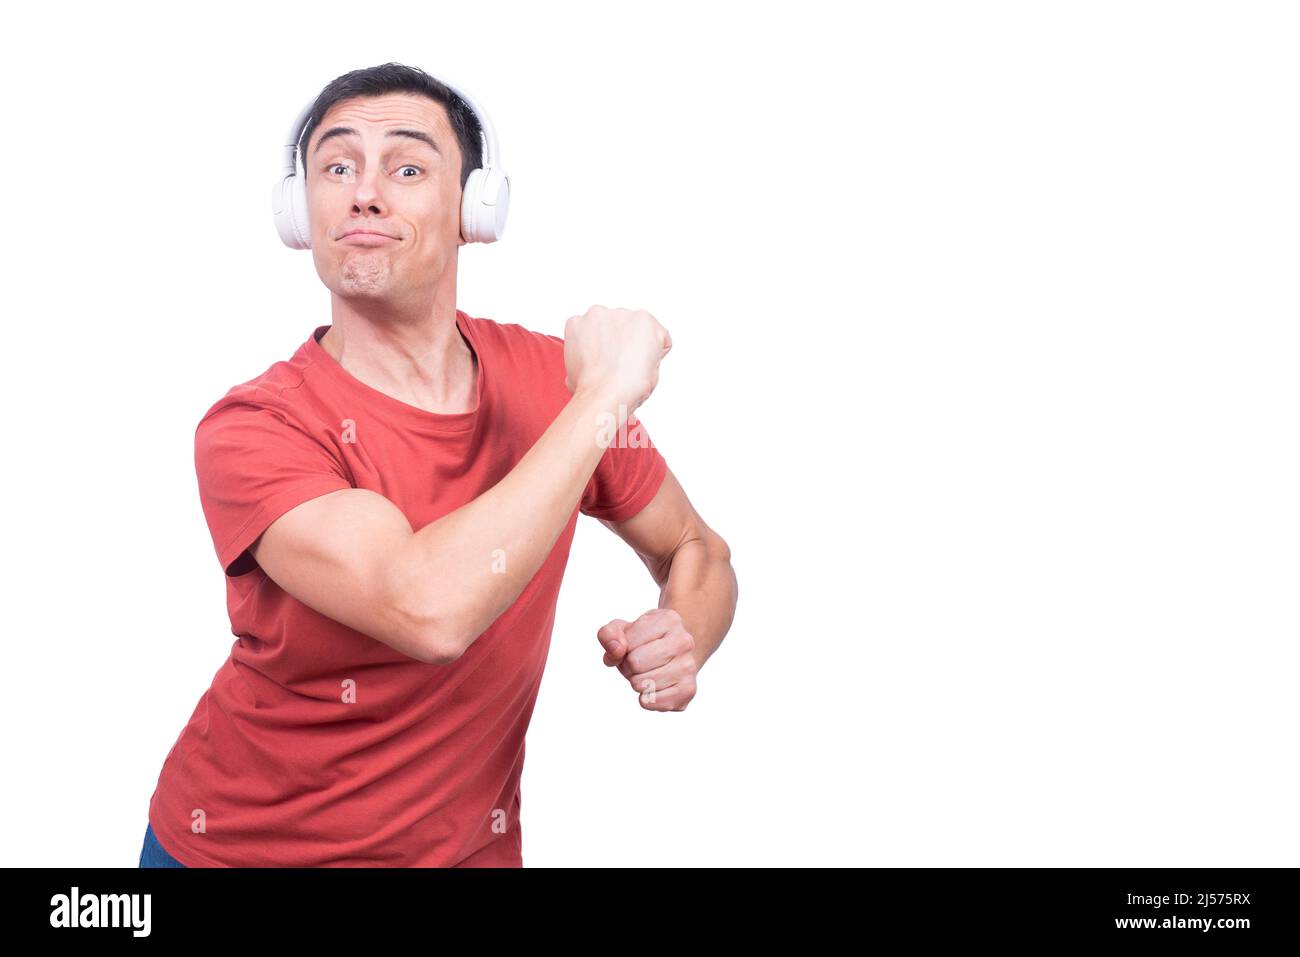 Delightful guy in headphones dancing in studio Stock Photo